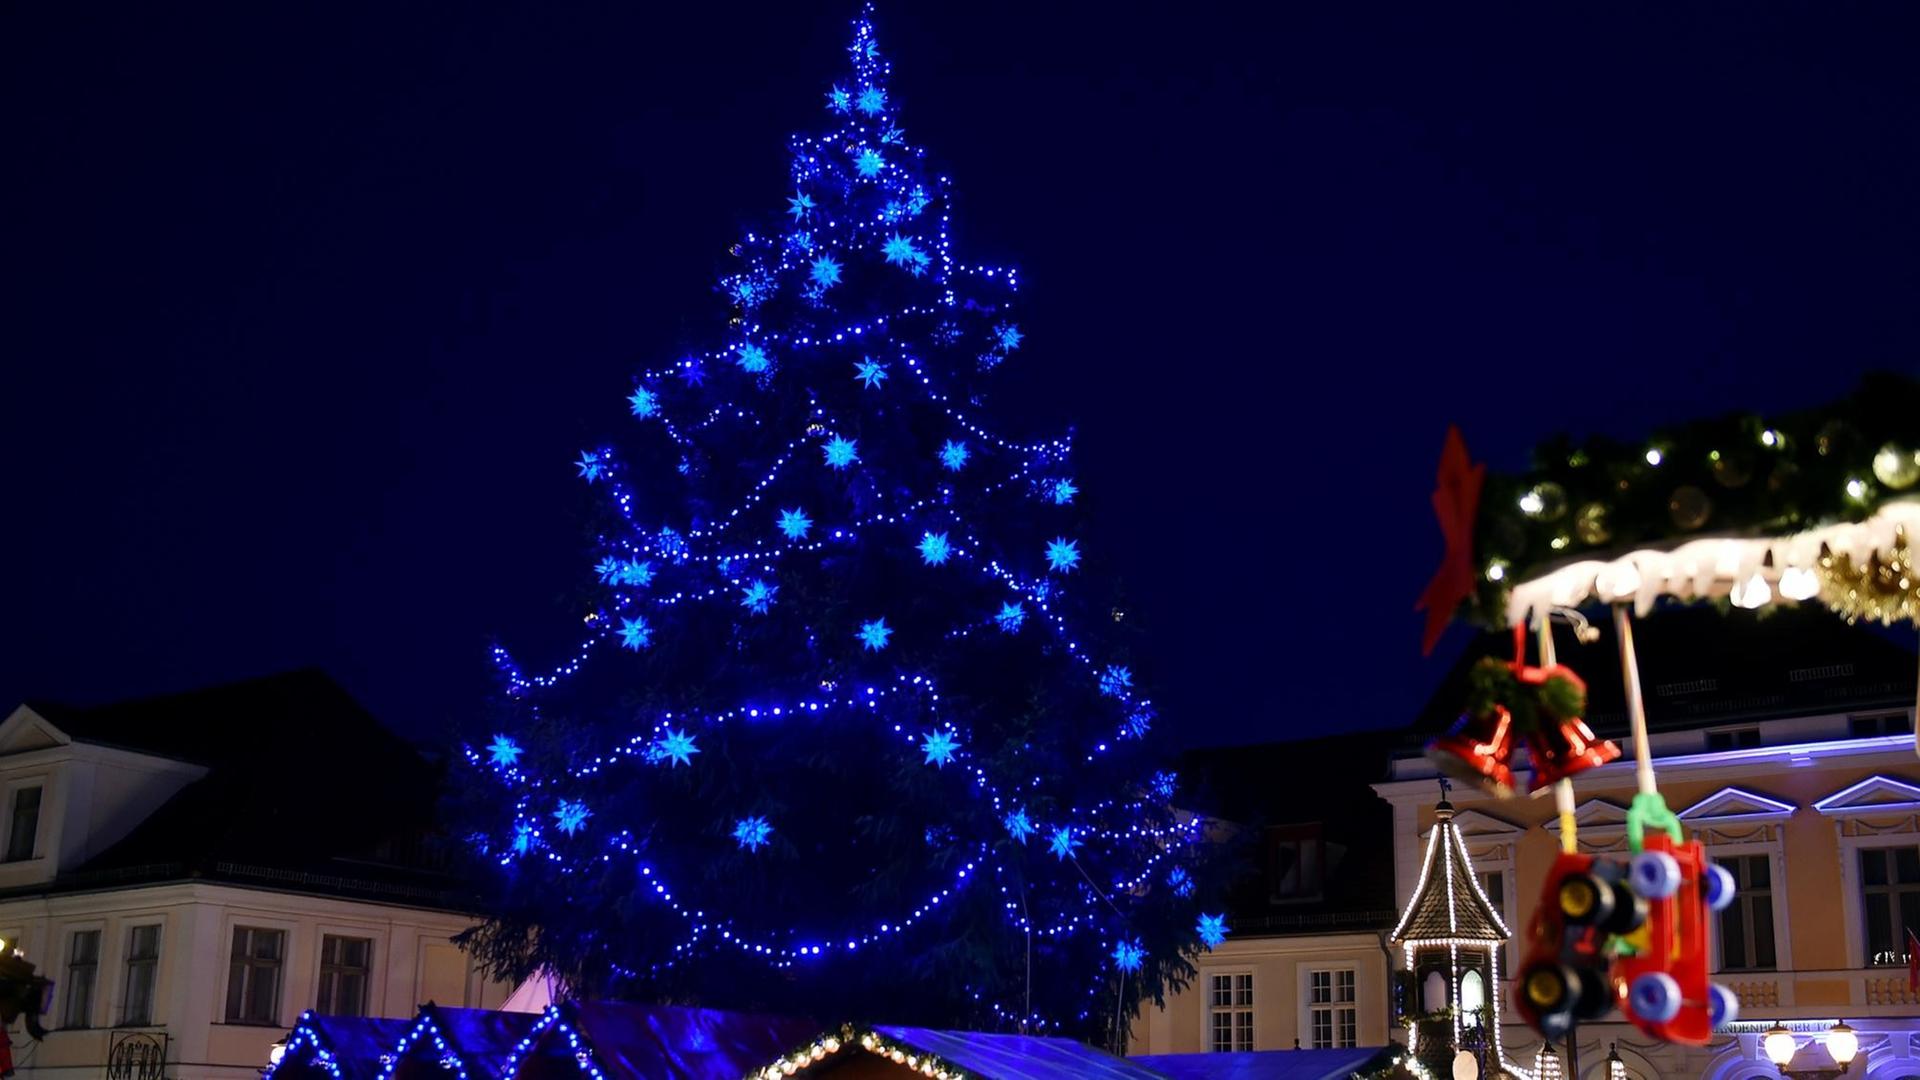 Festlich geschmückter Weihnachtsbaum auf dem Weihnachtsmarkt in Potsdam am 03.12.2015. Der Weihnachtsmarkt hat im Jahr 2015 das Motto: "Blauer Lichterglanz"